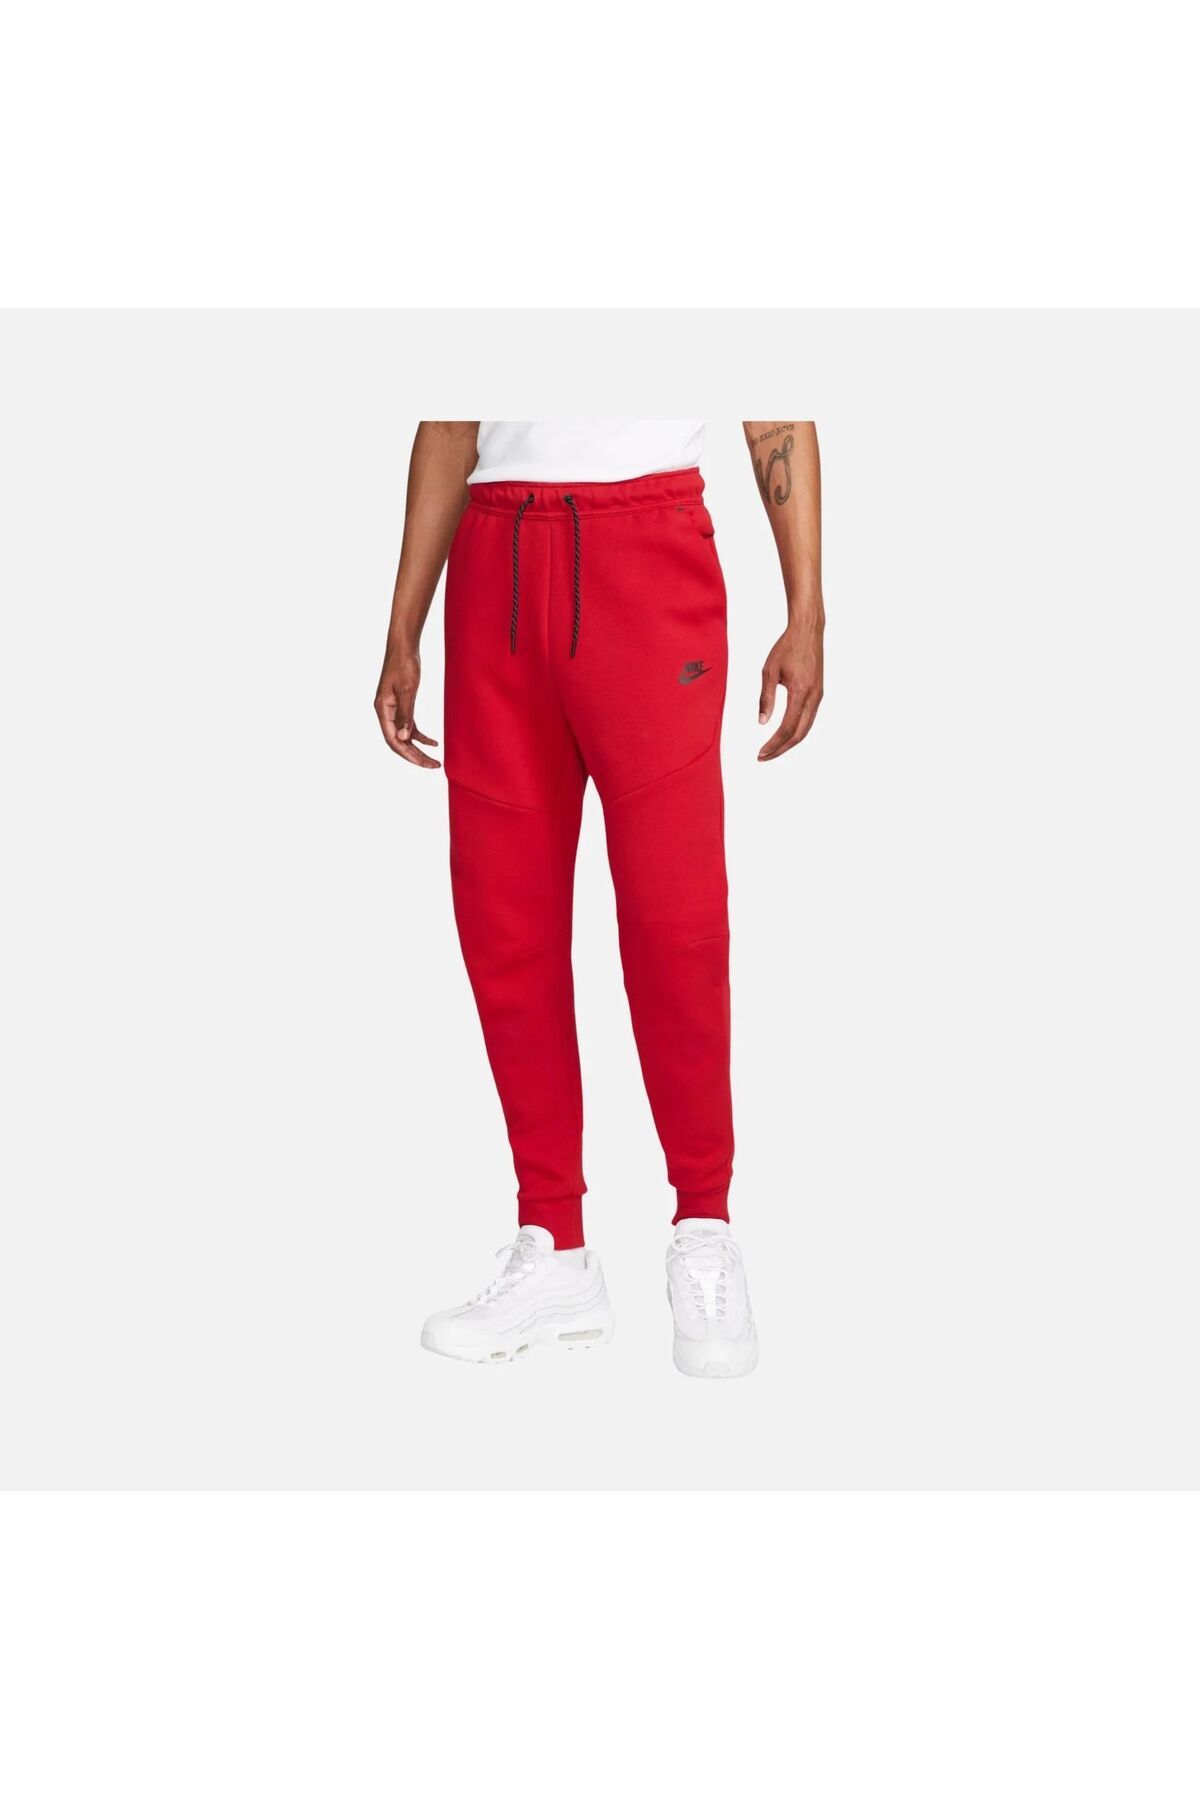 Nike Sportswear Tech Fleece Jogger Kırmızı Erkek Eşofman Altı